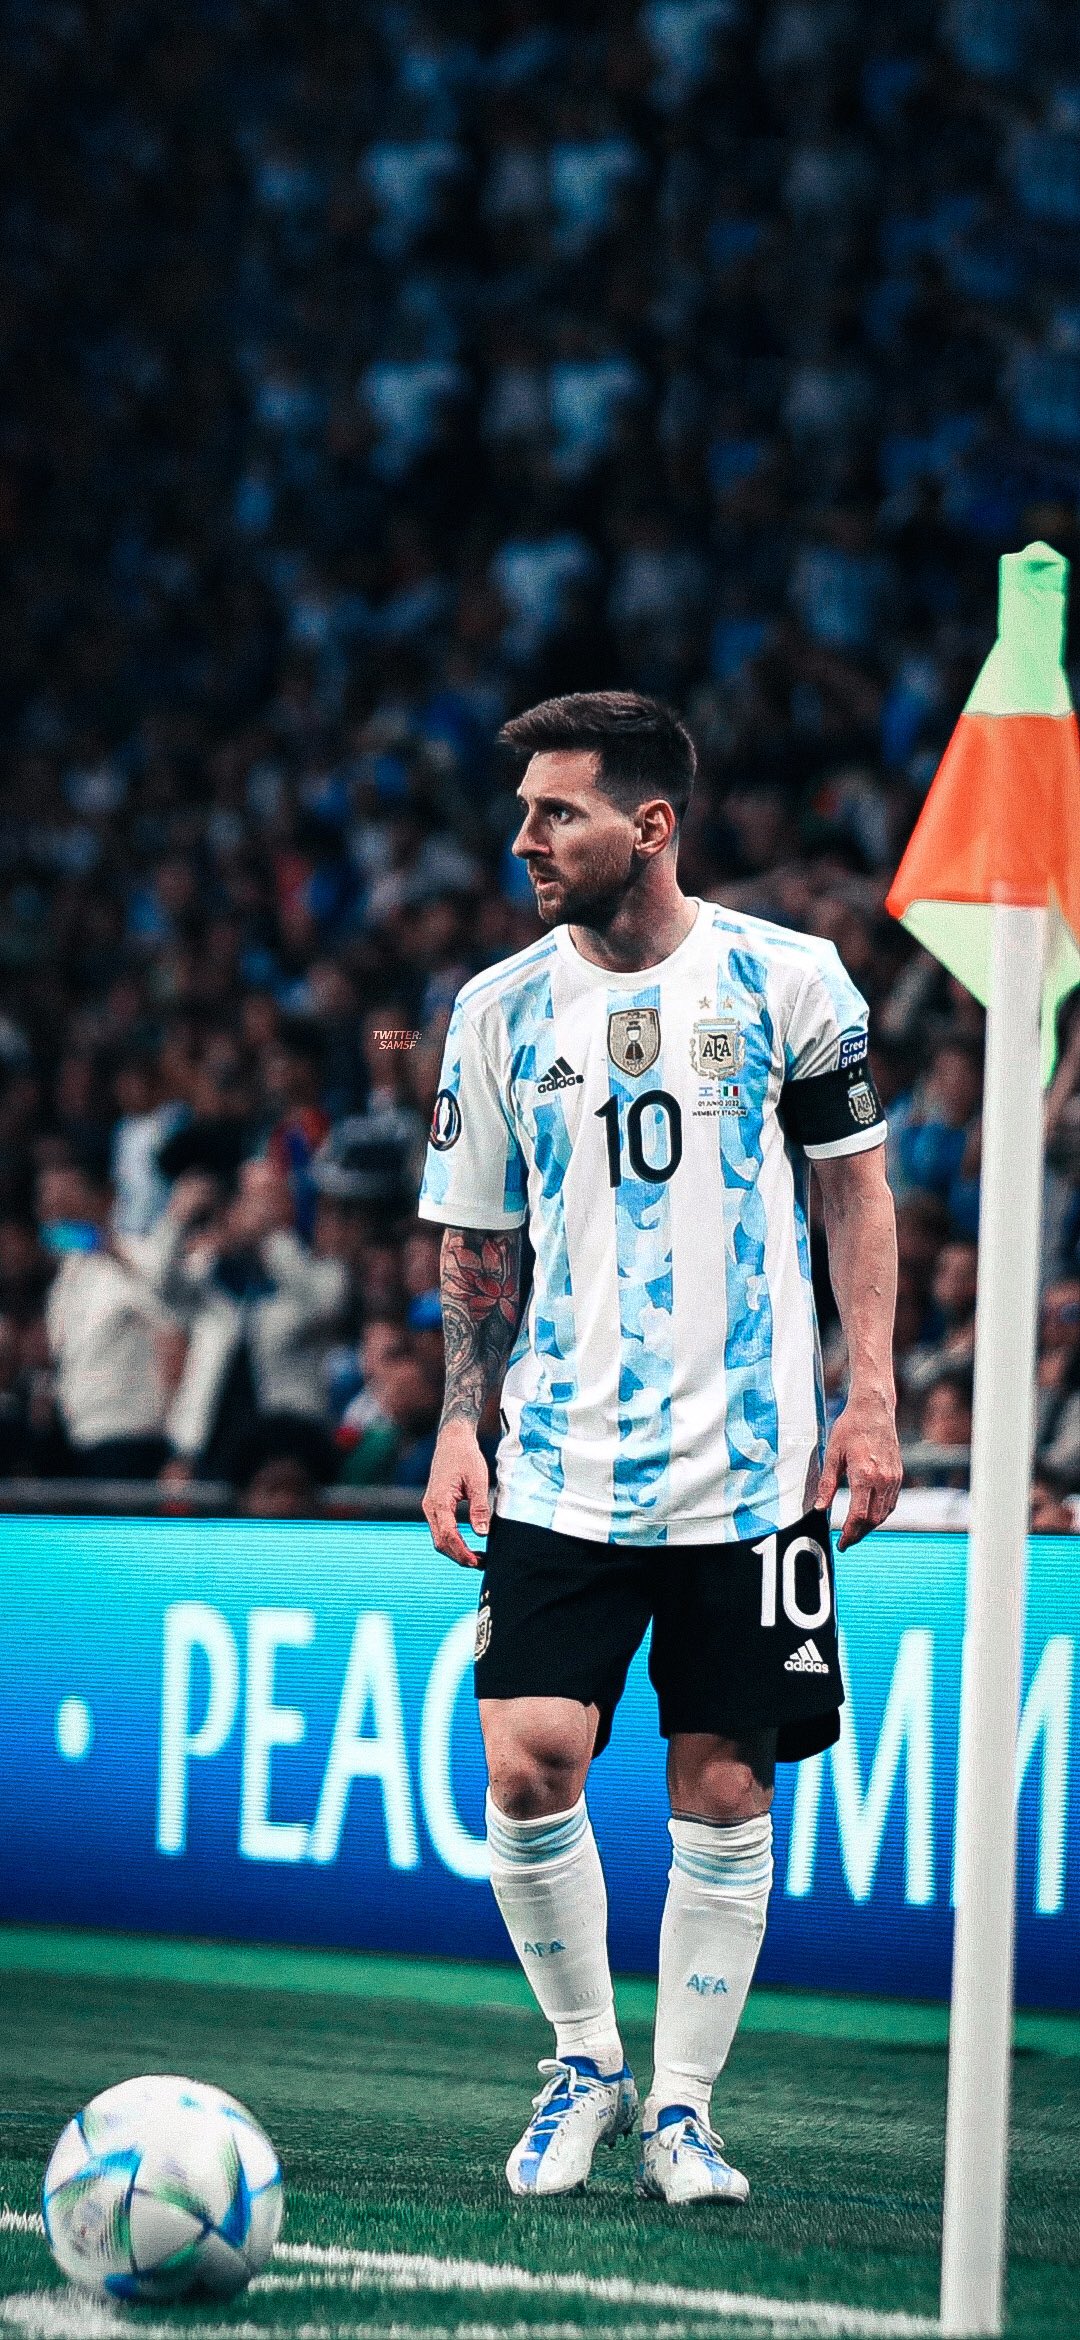 Lionel Messi luôn là một trong những cầu thủ được yêu thích nhất trên toàn cầu vì tài năng để đá bóng và tâm huyết với đội bóng. Hãy cùng tìm hiểu về những bức ảnh nền độc đáo và đẹp mắt về Messi, để có thể kết nối với thần tượng của bạn.